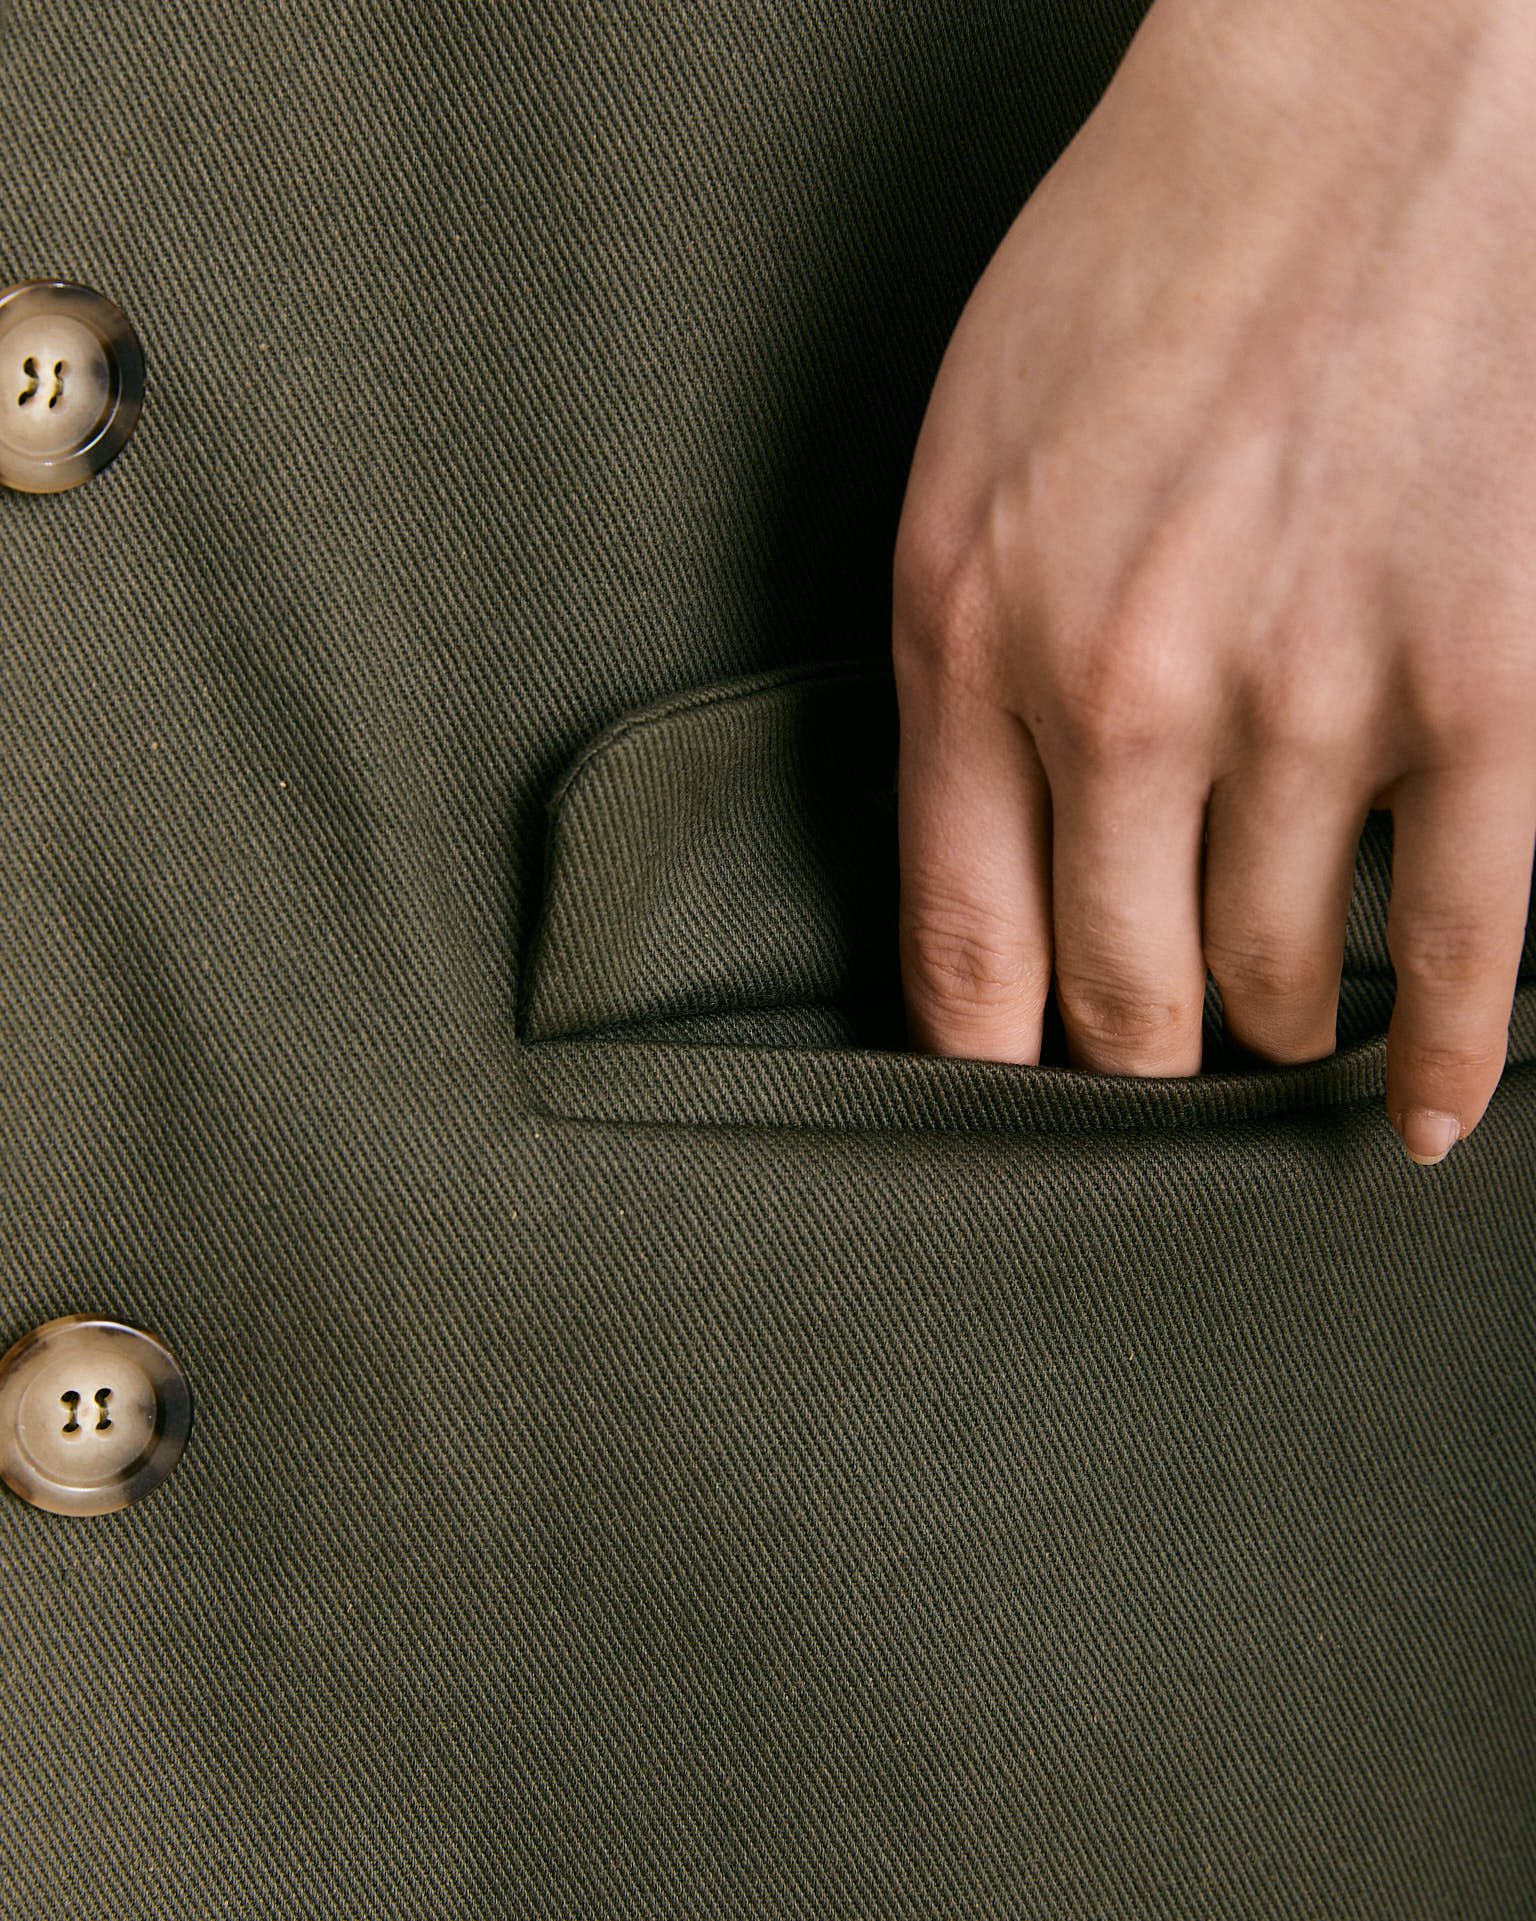 Un blazer realizzato in 100% cotone color verde sottobosco.  Il blazer Mimi rispetta la linea asciutta e maschile del capo, una giacca leggermente sfiancata con due tasche con pattina e due bottoni sul davanti.